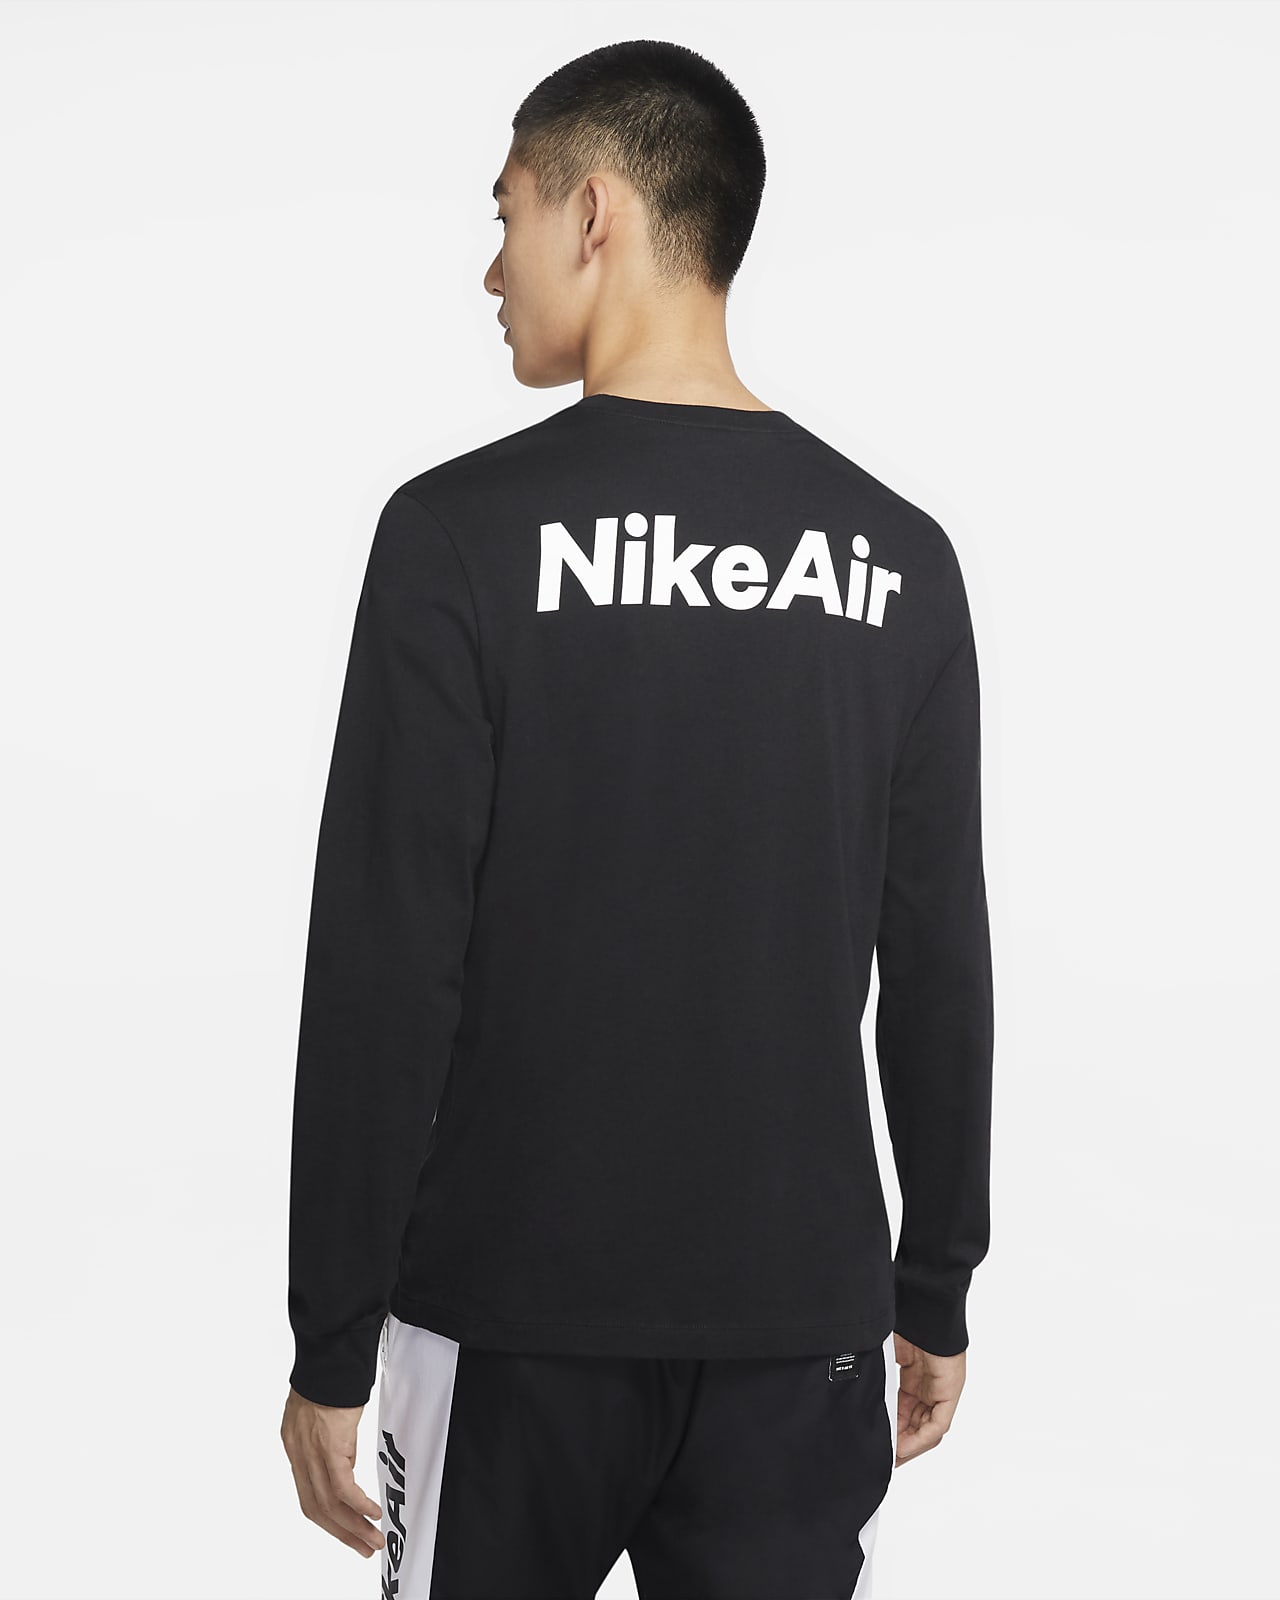 NIKE公式】ナイキ スポーツウェア メンズ ロングスリーブ Tシャツ